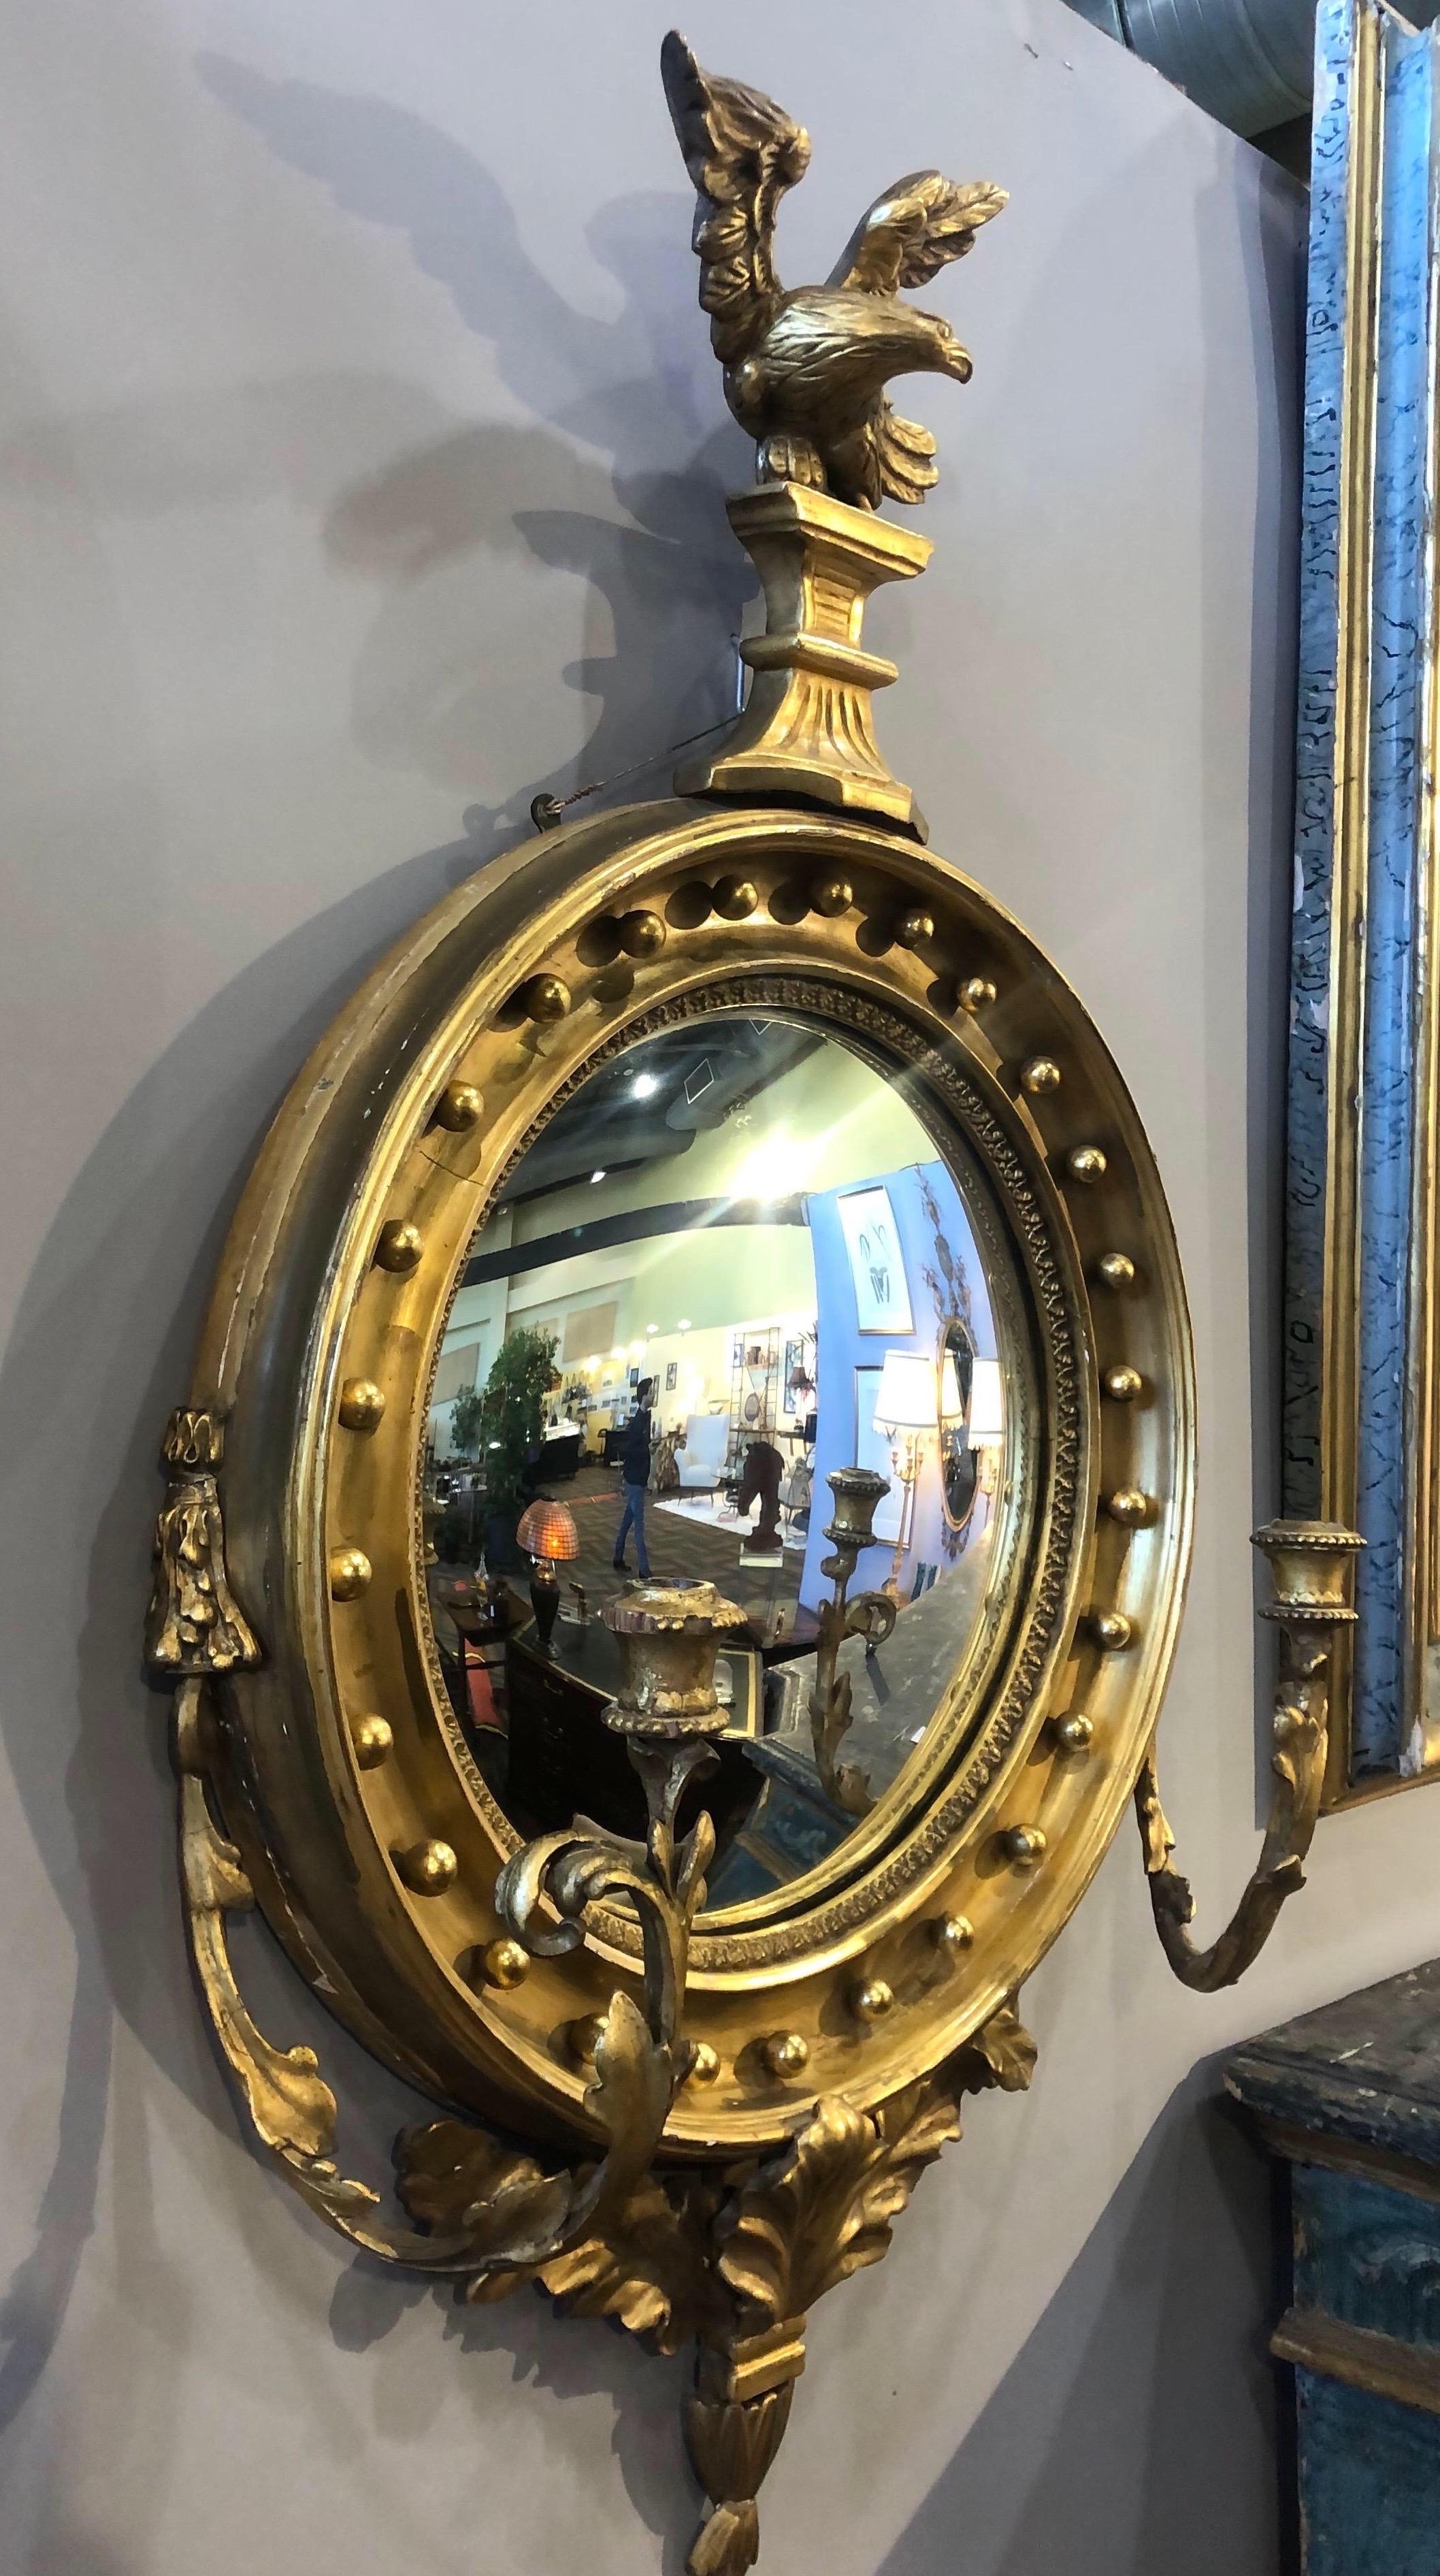 Schöner englischer Konvexspiegel mit Girandole-Armen. Der Spiegel ist mit einem geschnitzten Adler gekrönt und ruht auf Blatt- und Blumenschnitzereien. 

Das Etikett auf der Rückseite zeigt an, dass es in Dover, England, verkauft wurde.